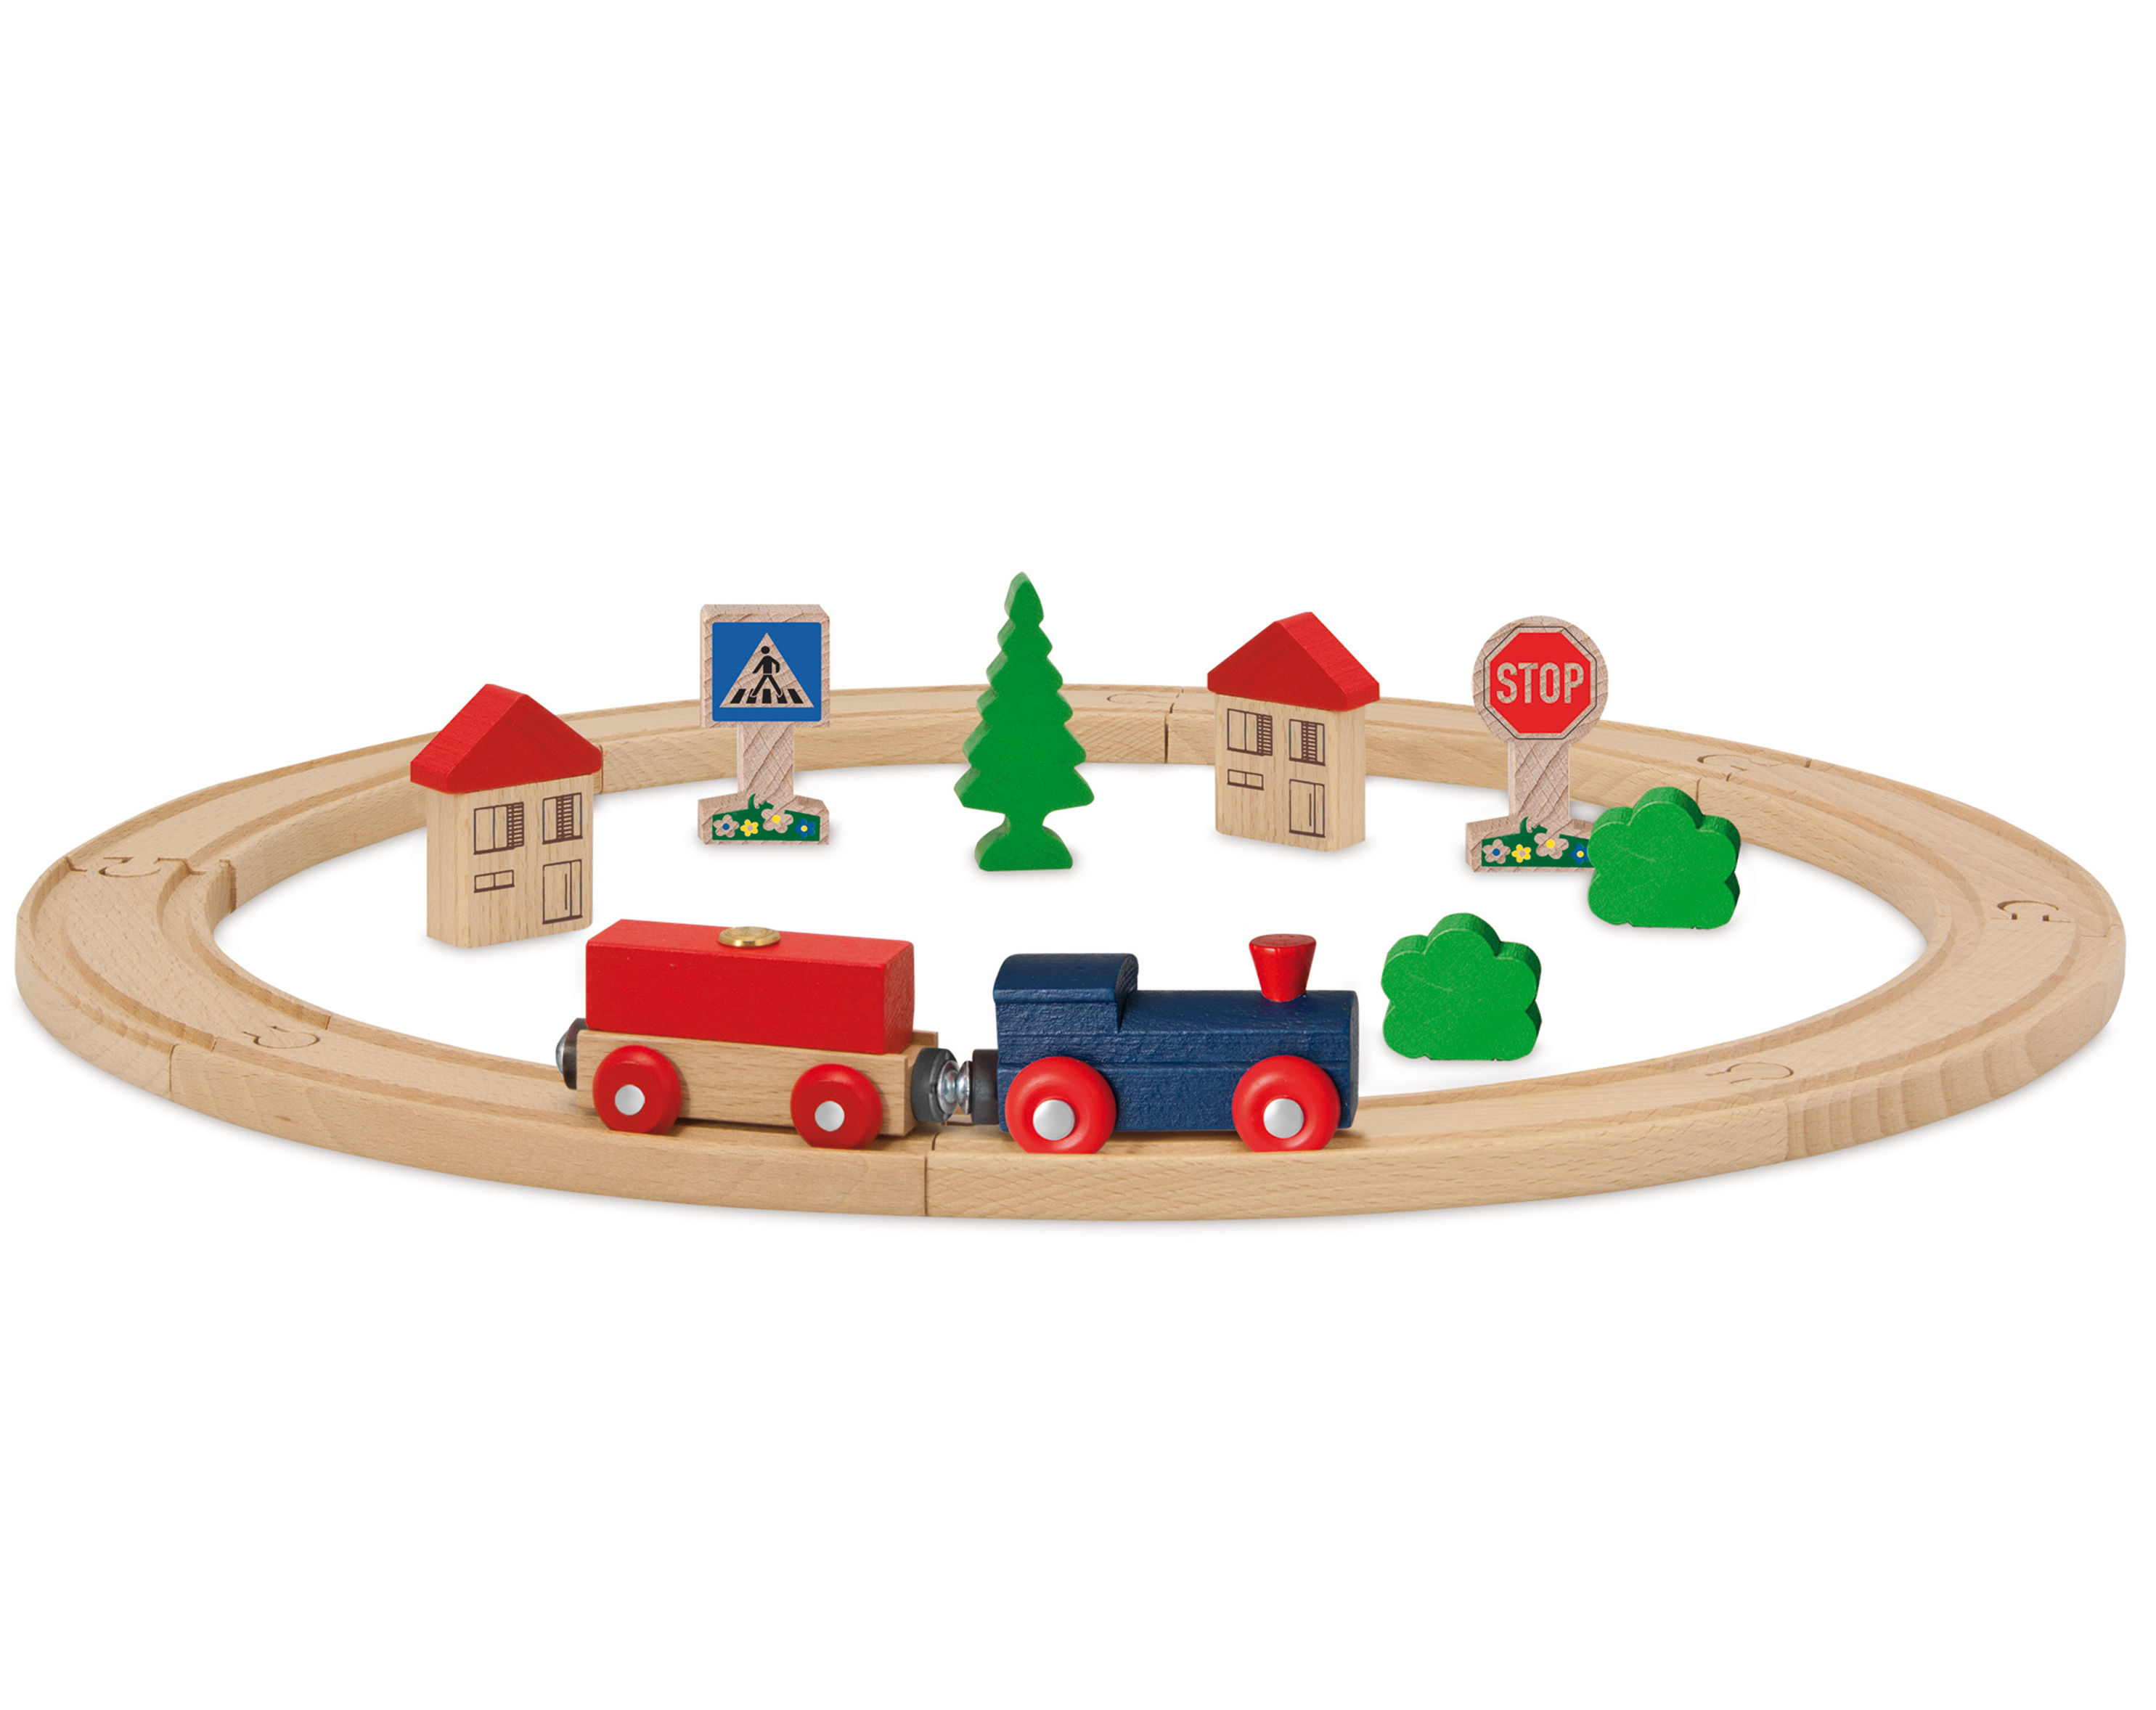 Spielzeug-Eisenbahn KREIS 20-teilig aus Holz | Weltbild.ch